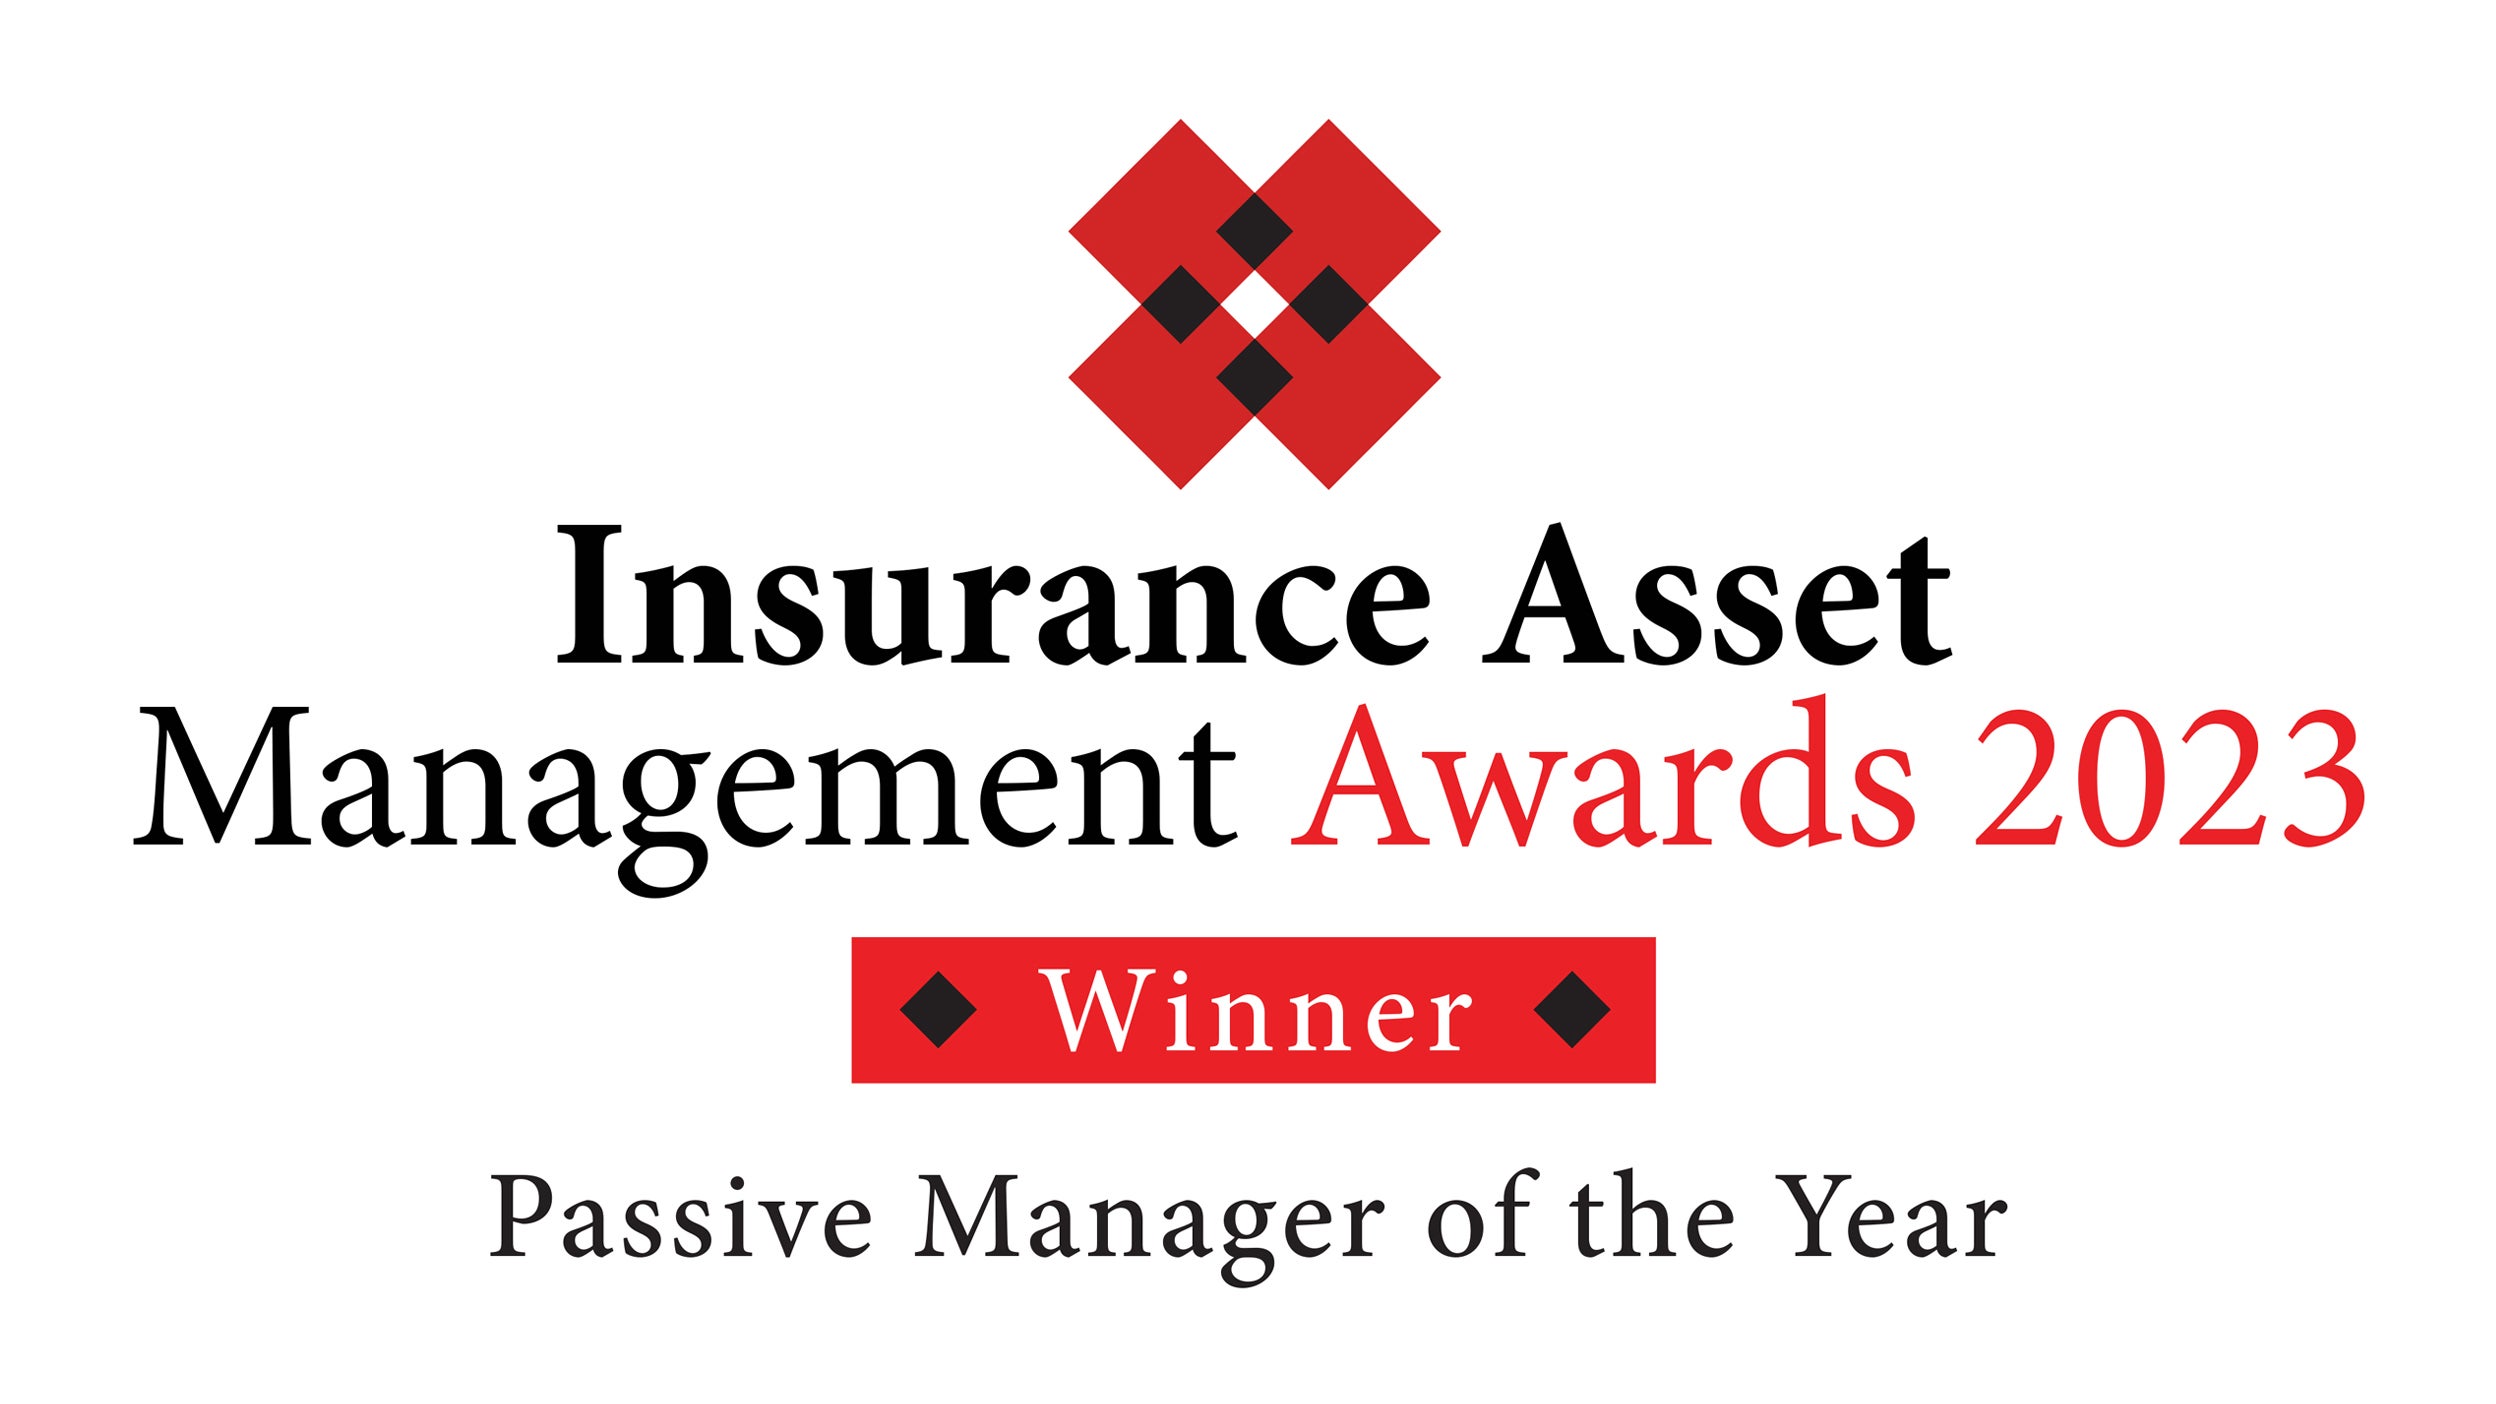 Insurance Asset Management Awards 2023